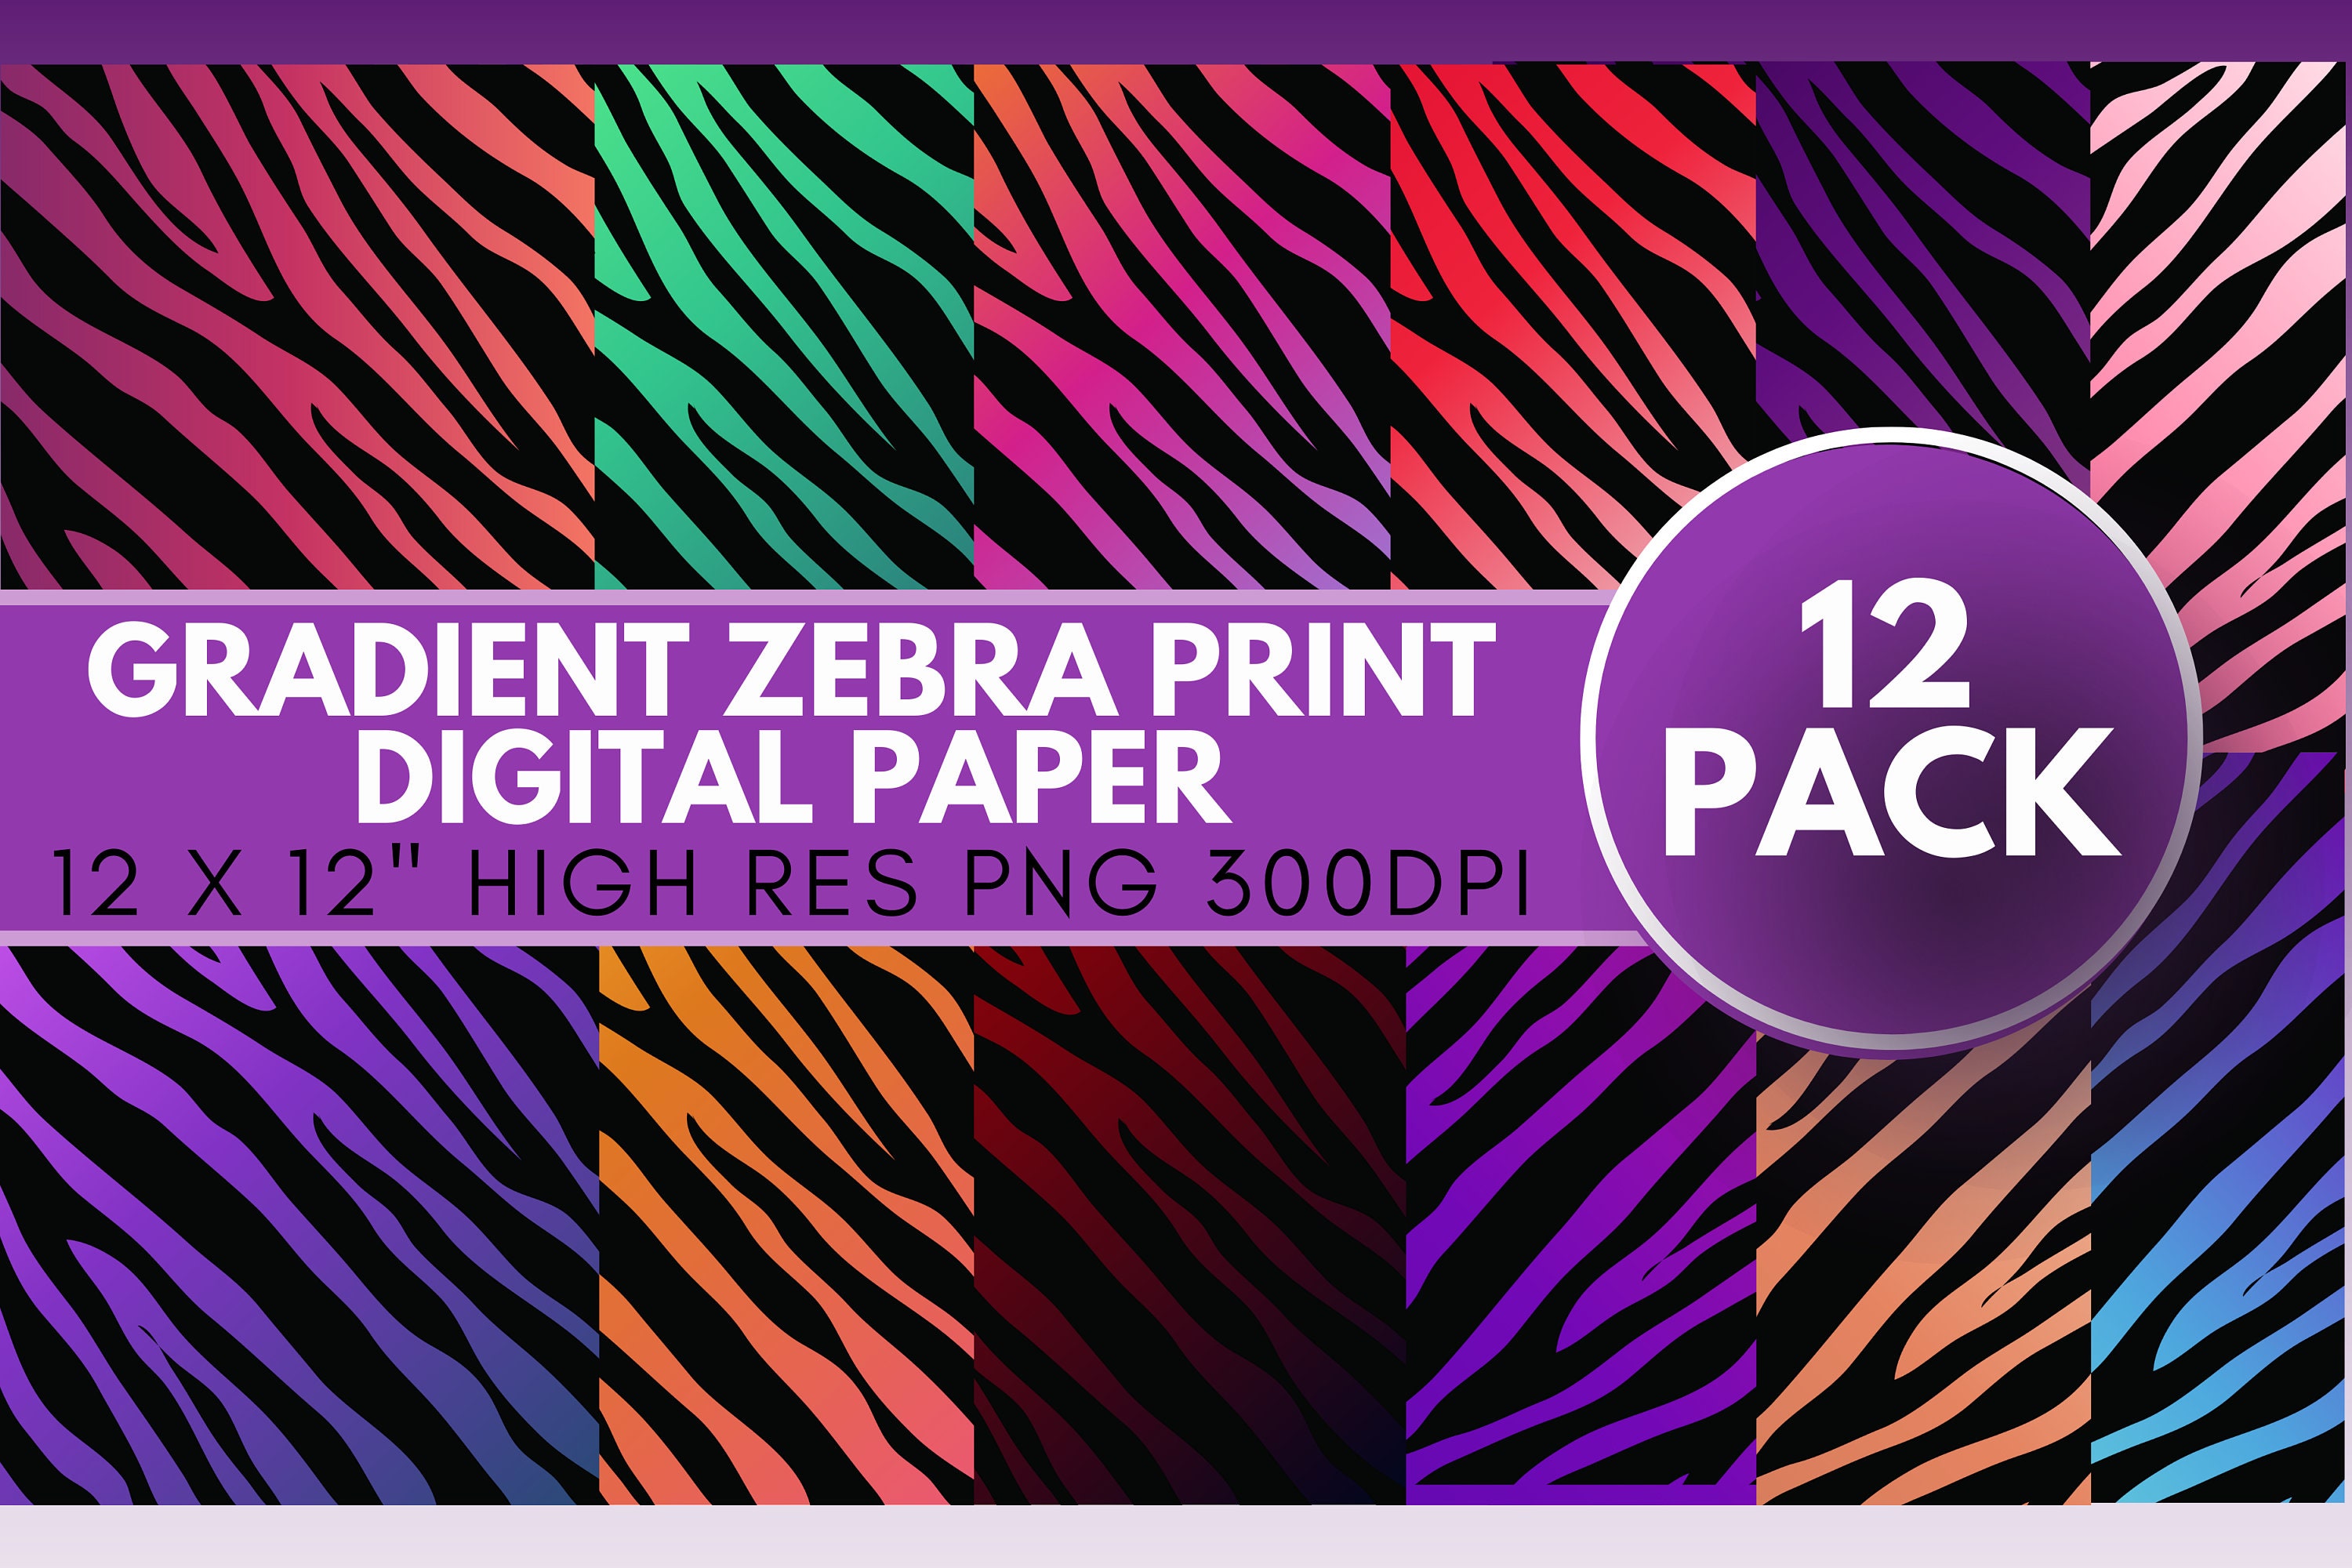 Patterned Vinyl, Navy, Orange and White Zebra Print Craft Vinyl Sheet HTV  or Adhesive Vinyl Pattern Vinyl HTV1234 